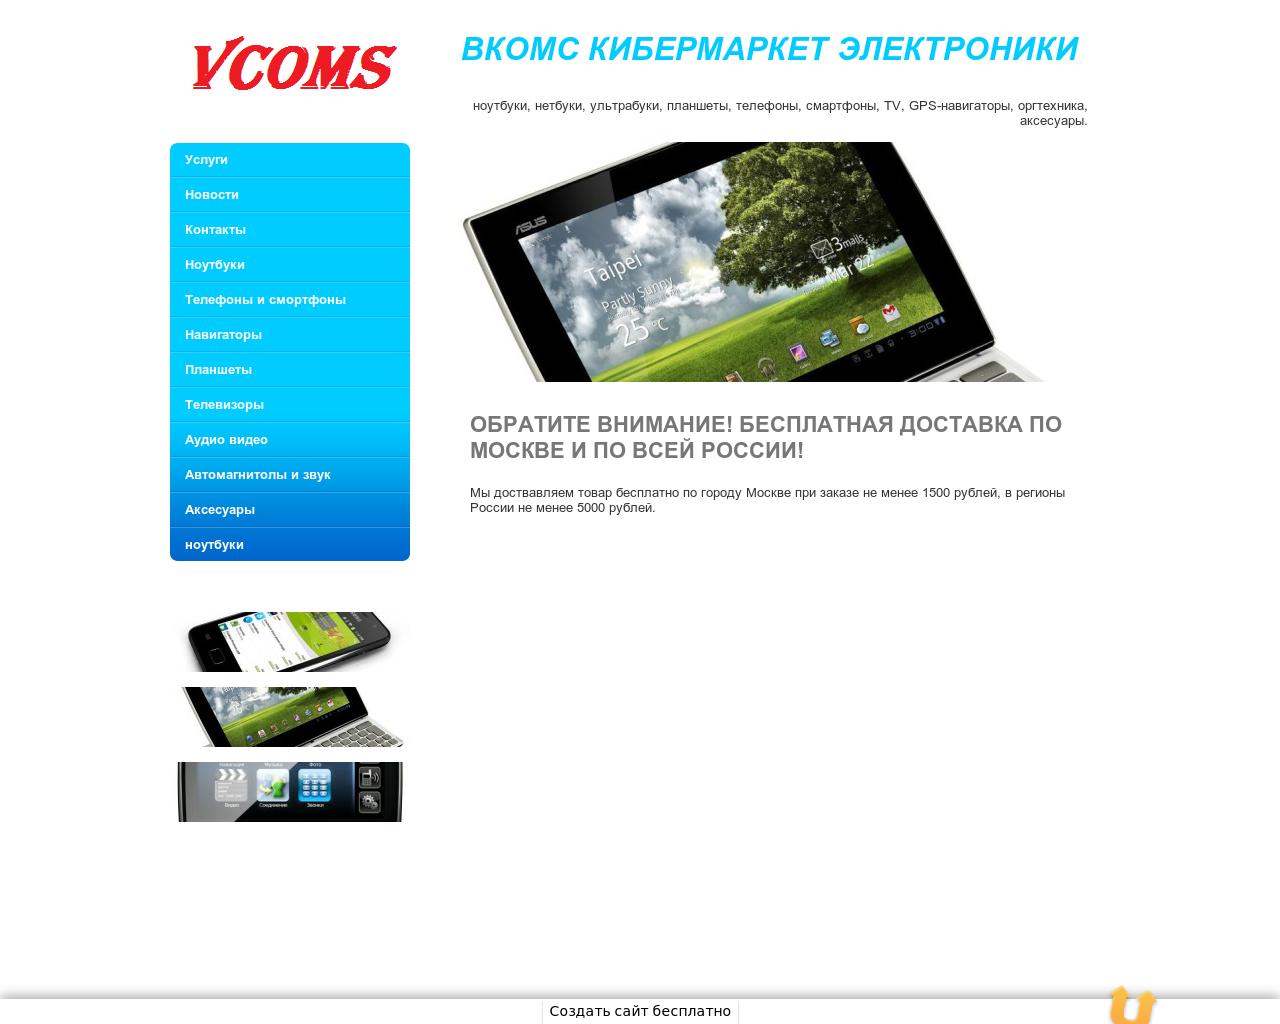 Изображение сайта vcoms.ru в разрешении 1280x1024